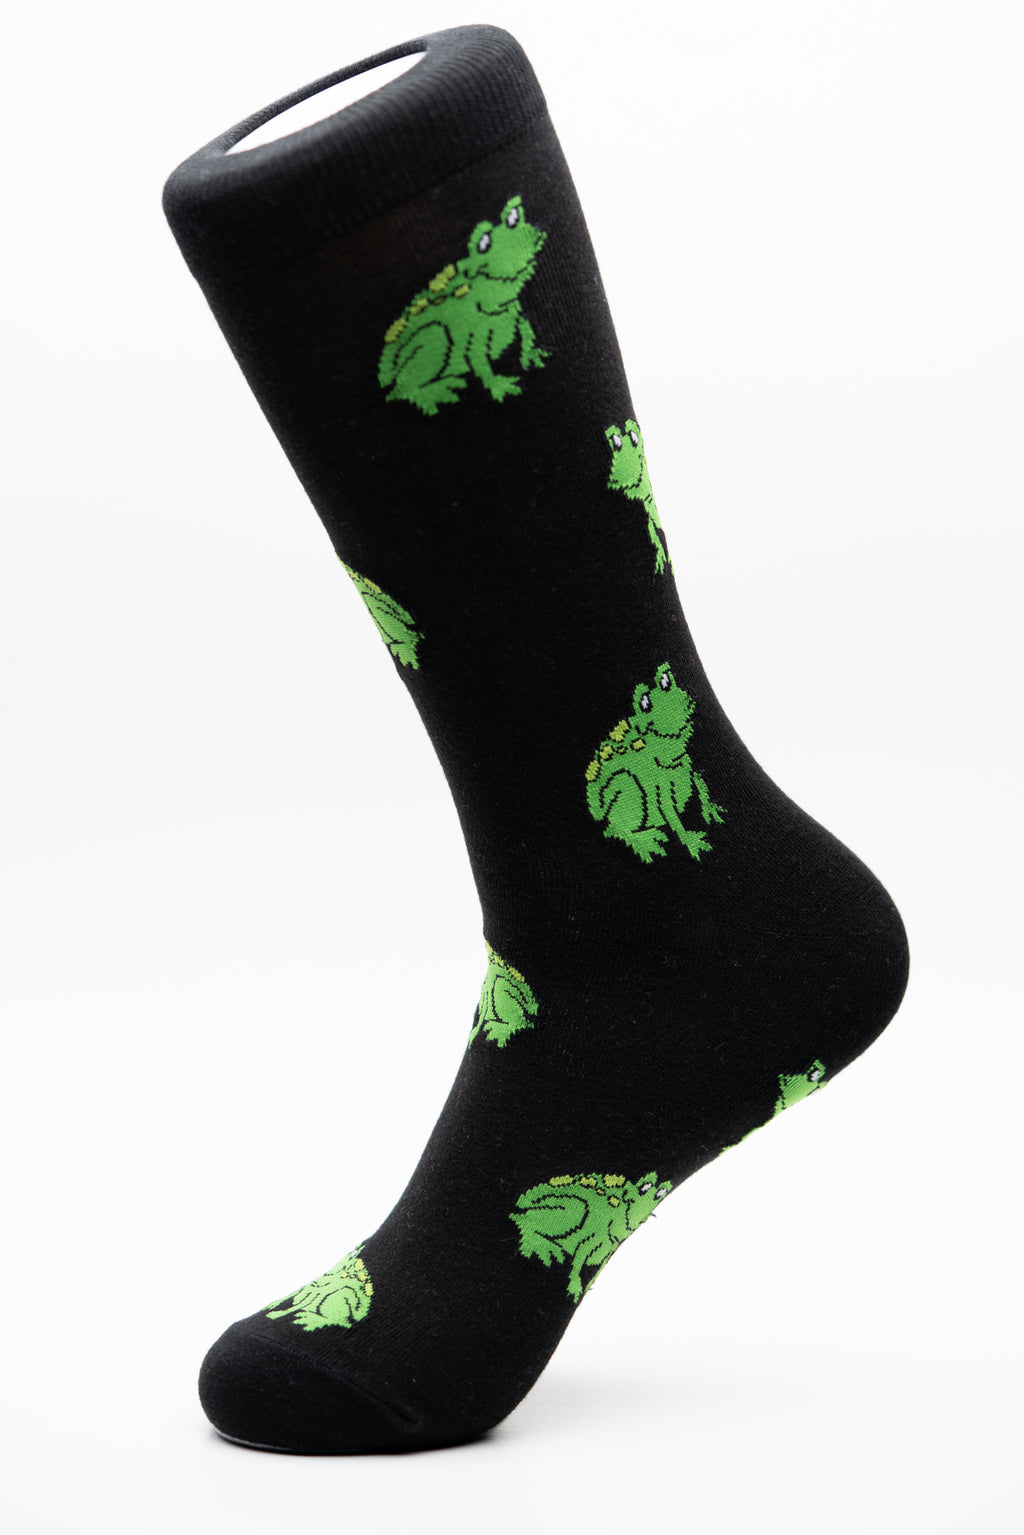 Frog Fun crew socks